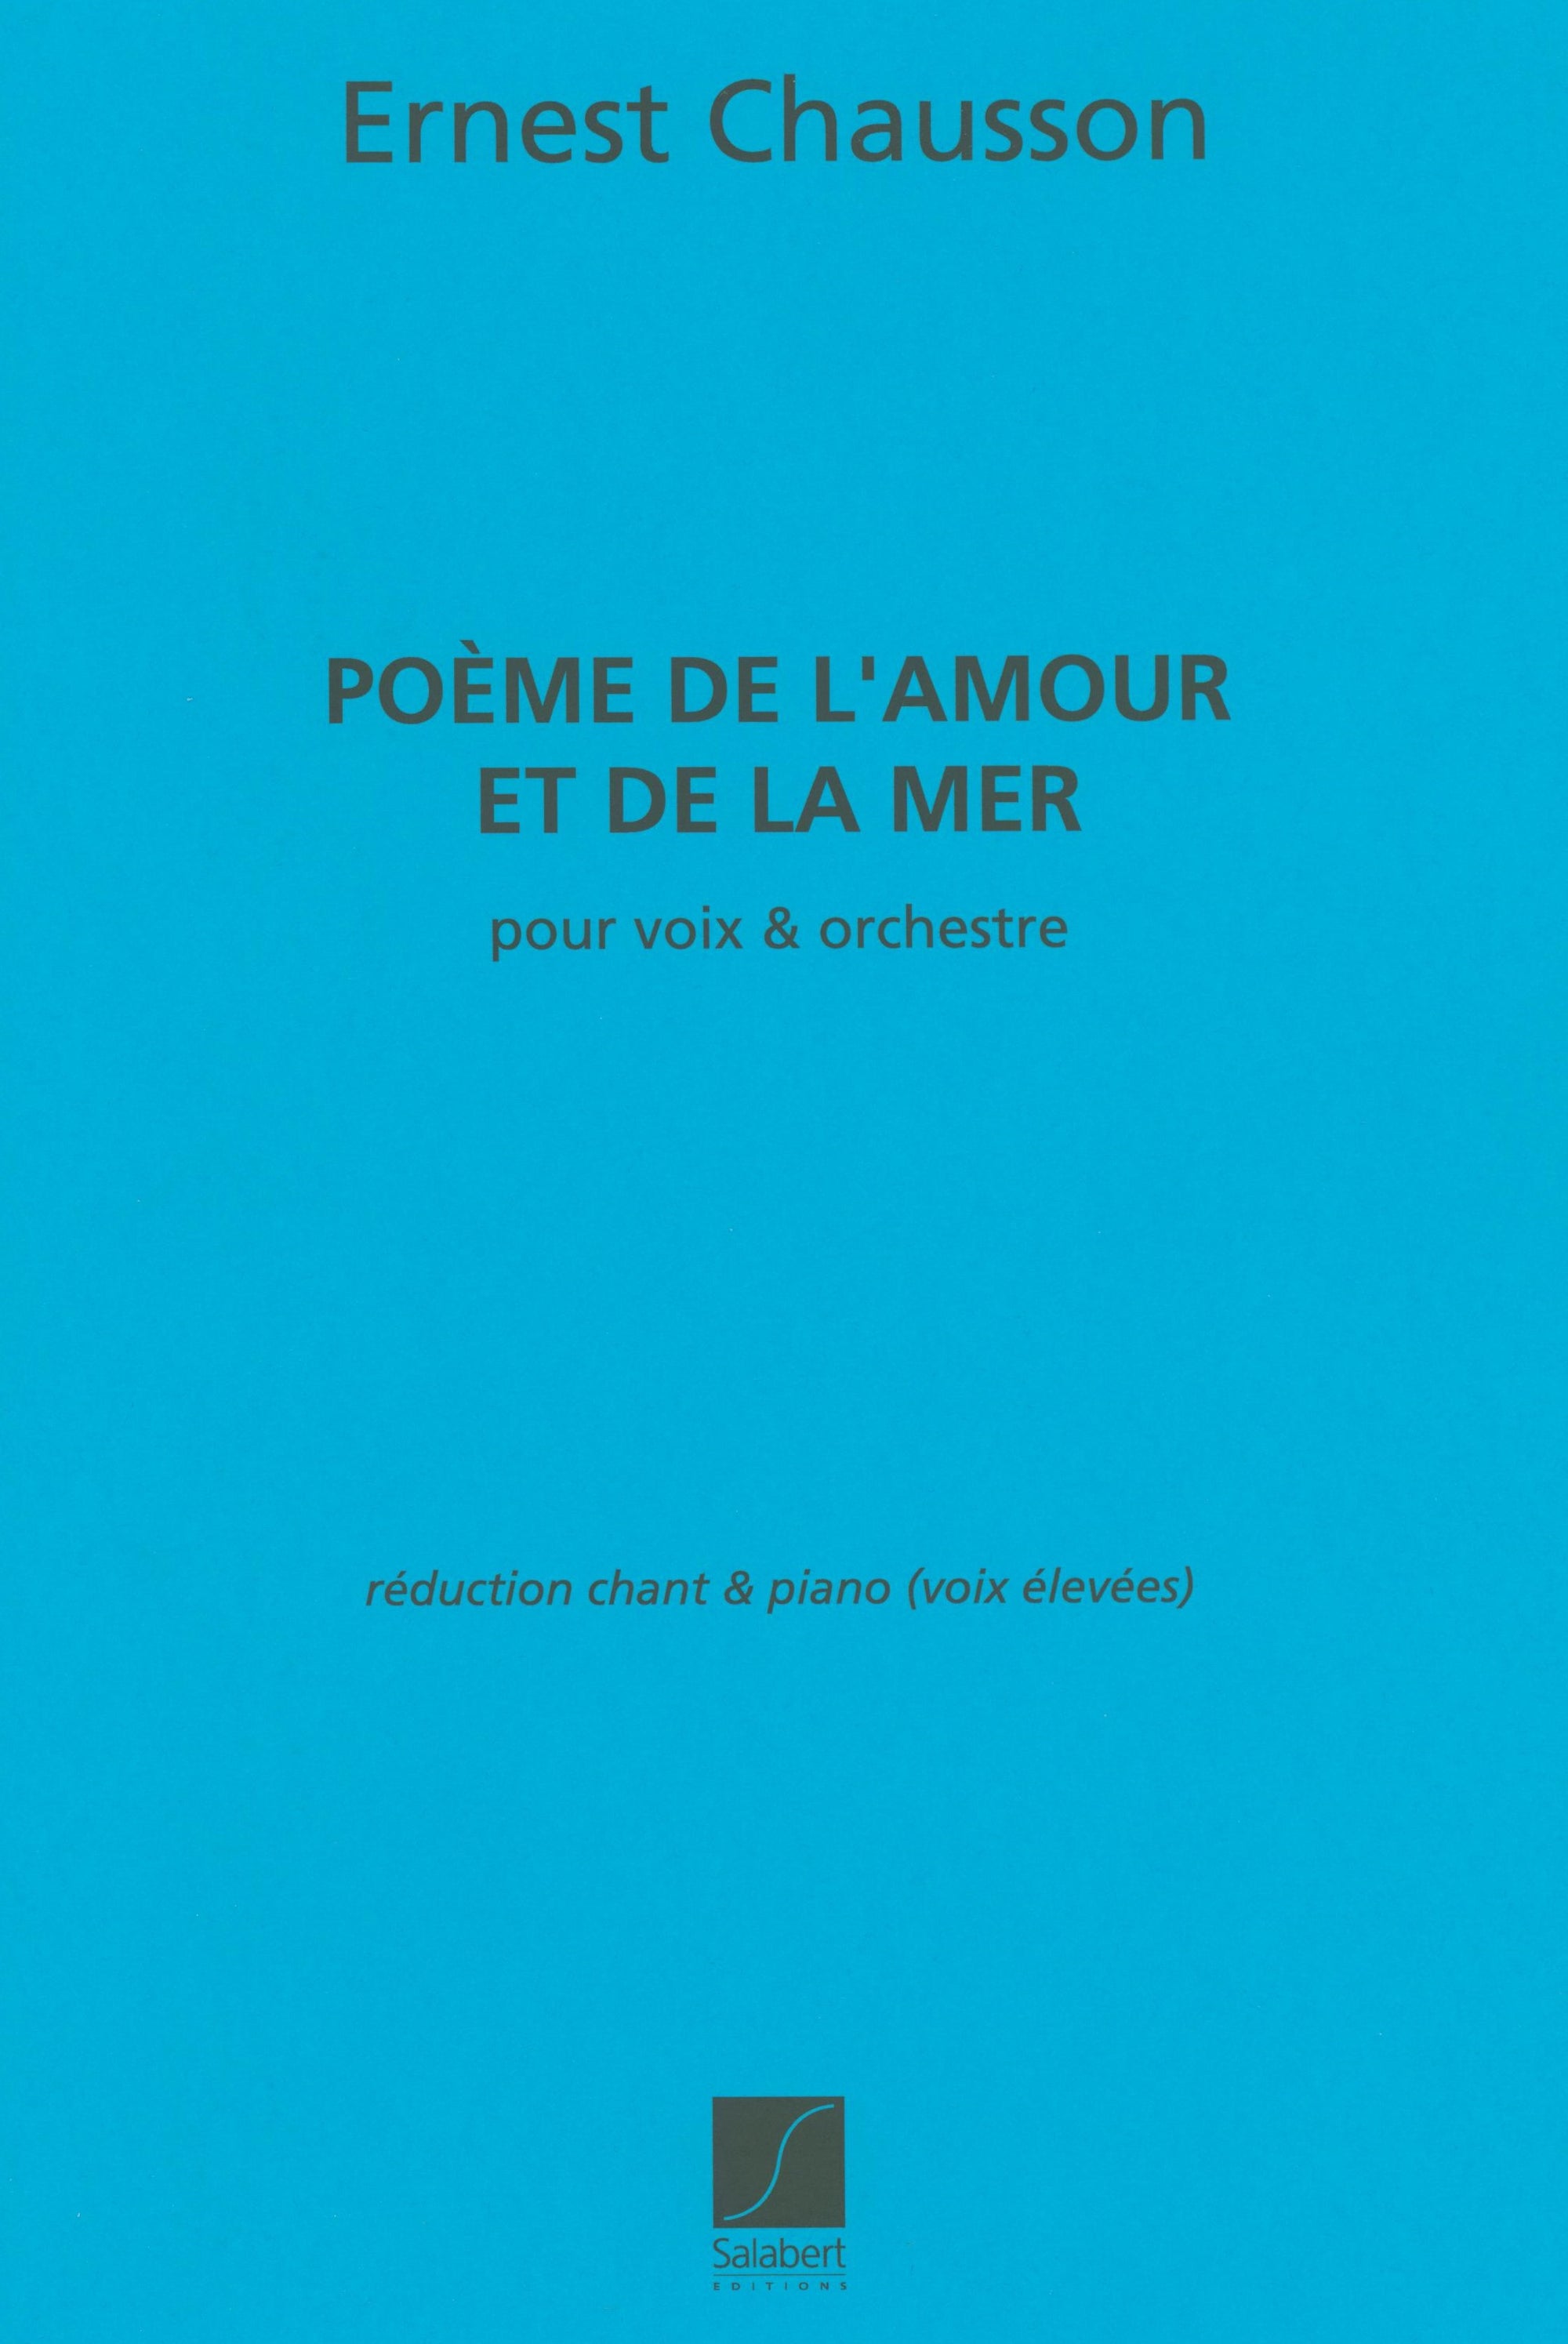 Chausson: Poème de l'amour et de la mer, Op. 19